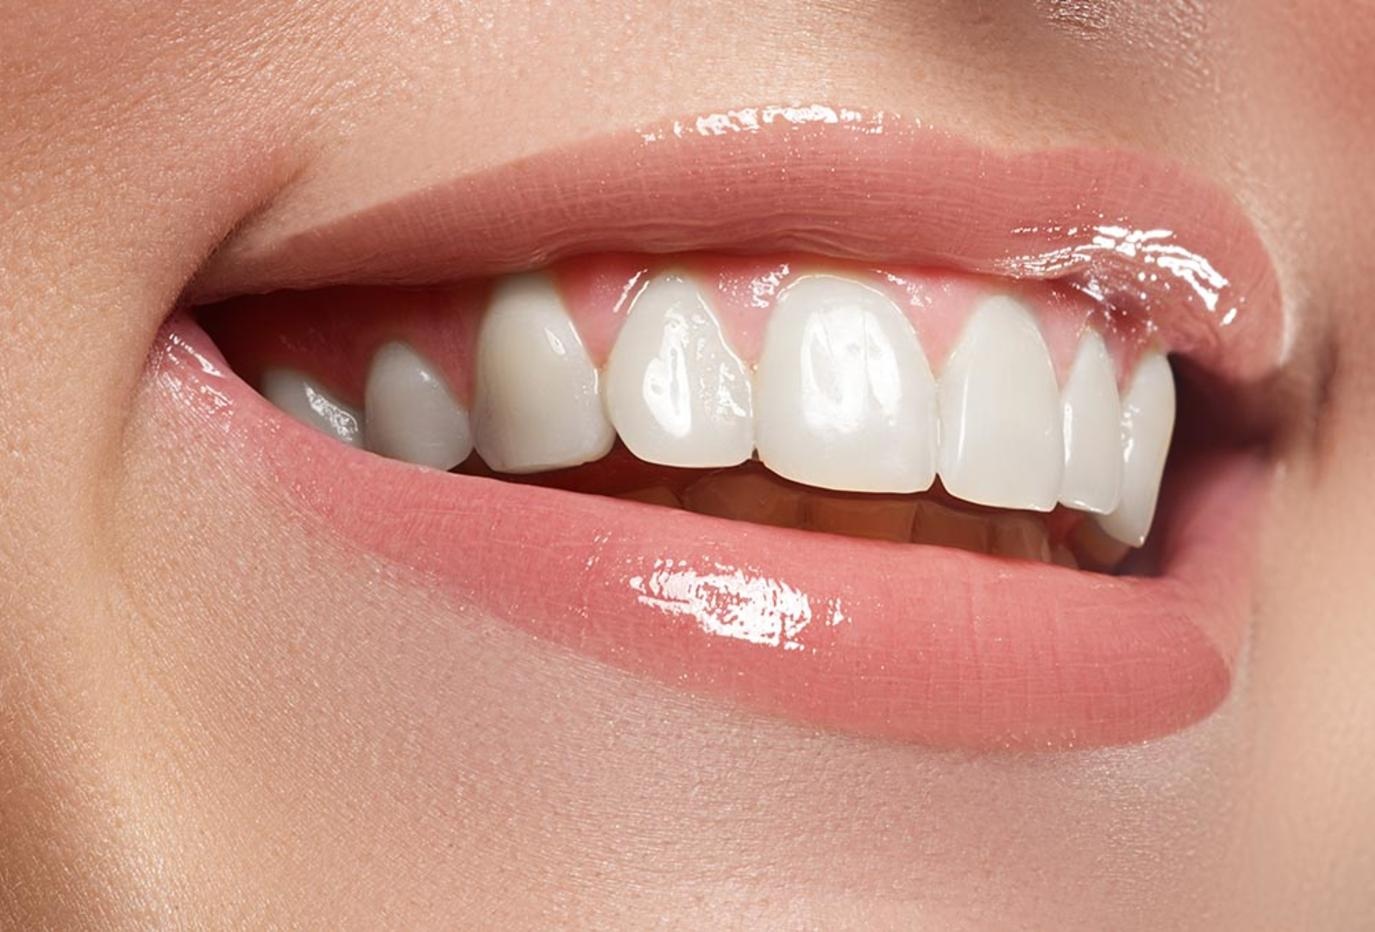 اتبع هذه الطريقة المذهلة لإزالة جير الأسنان بالمنزل بإتباع بعض الخطوات البسيطة